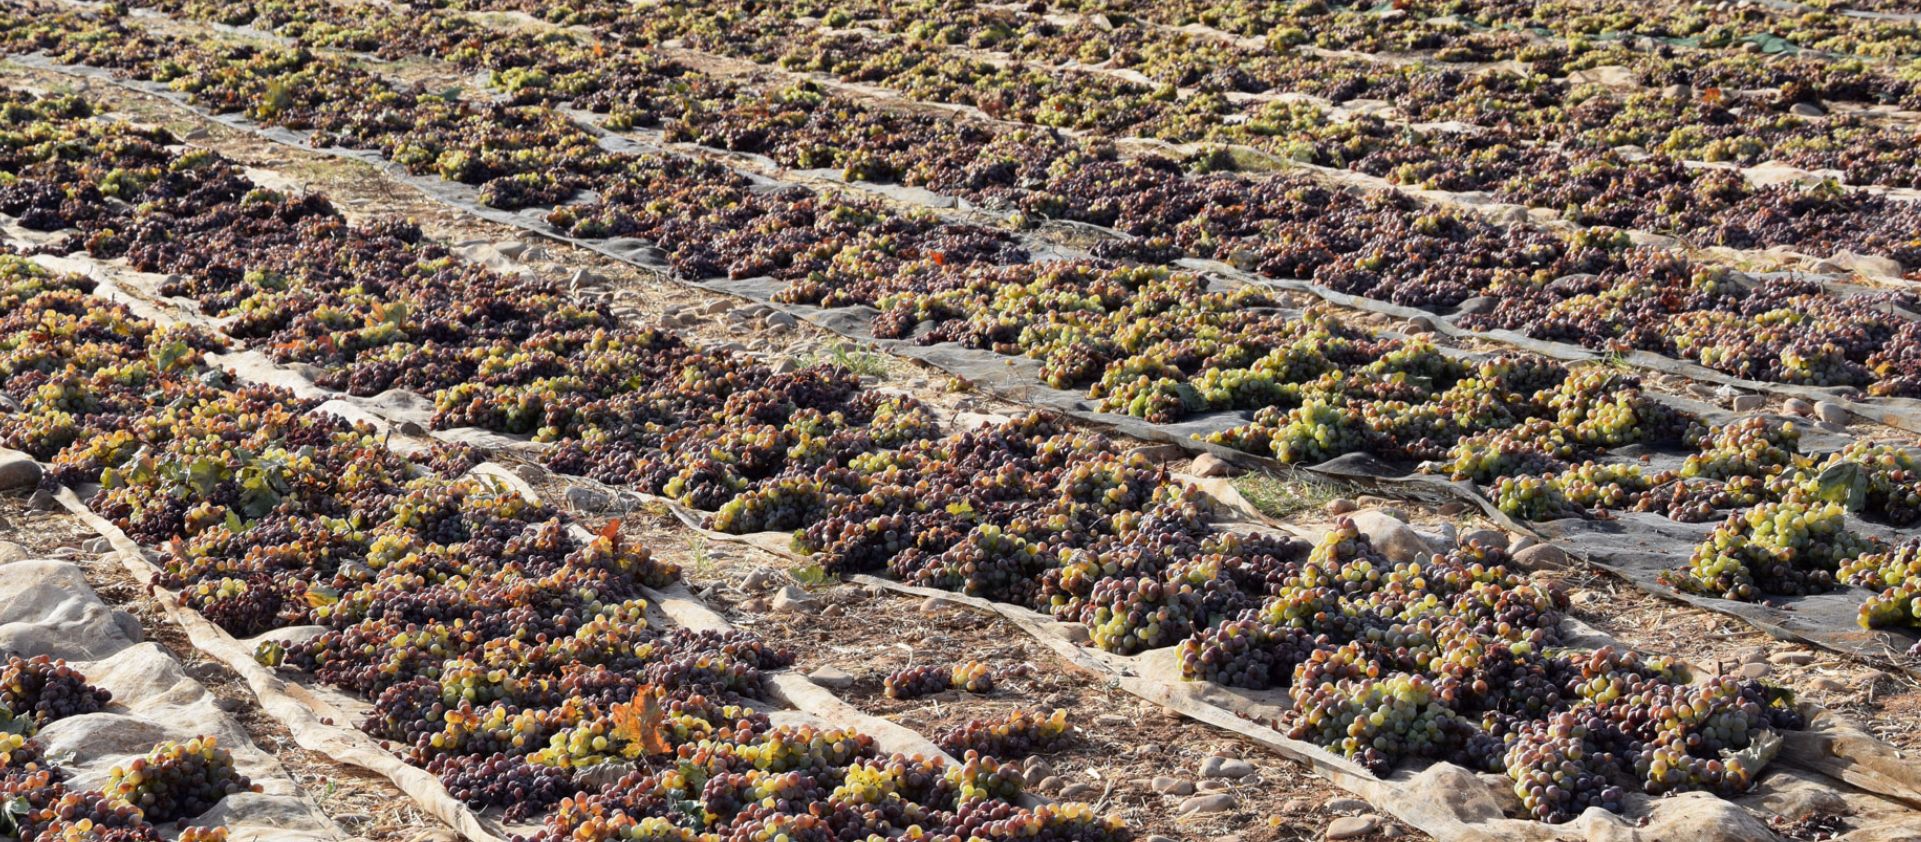 Los vinos de Jerez. Como simplificar una extraordinaria complejidad